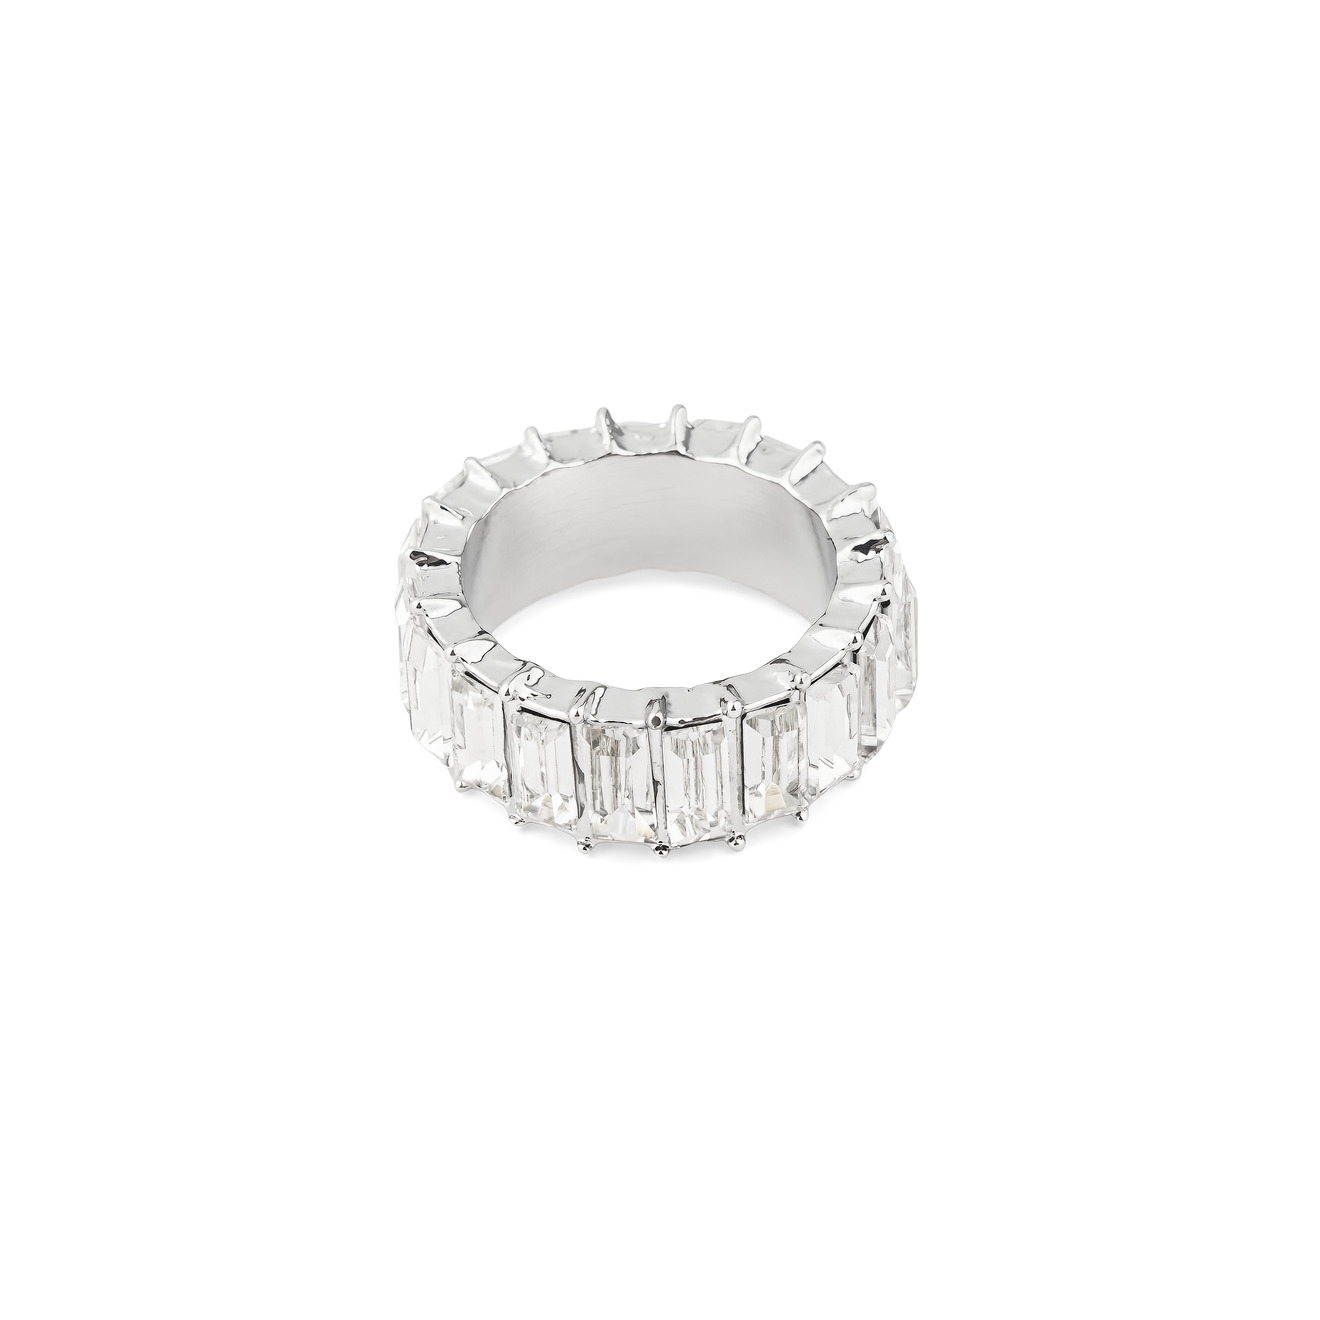 Herald Percy Серебристое кольцо с белыми кристаллами herald percy серебристое колье с кристаллами в виде капель